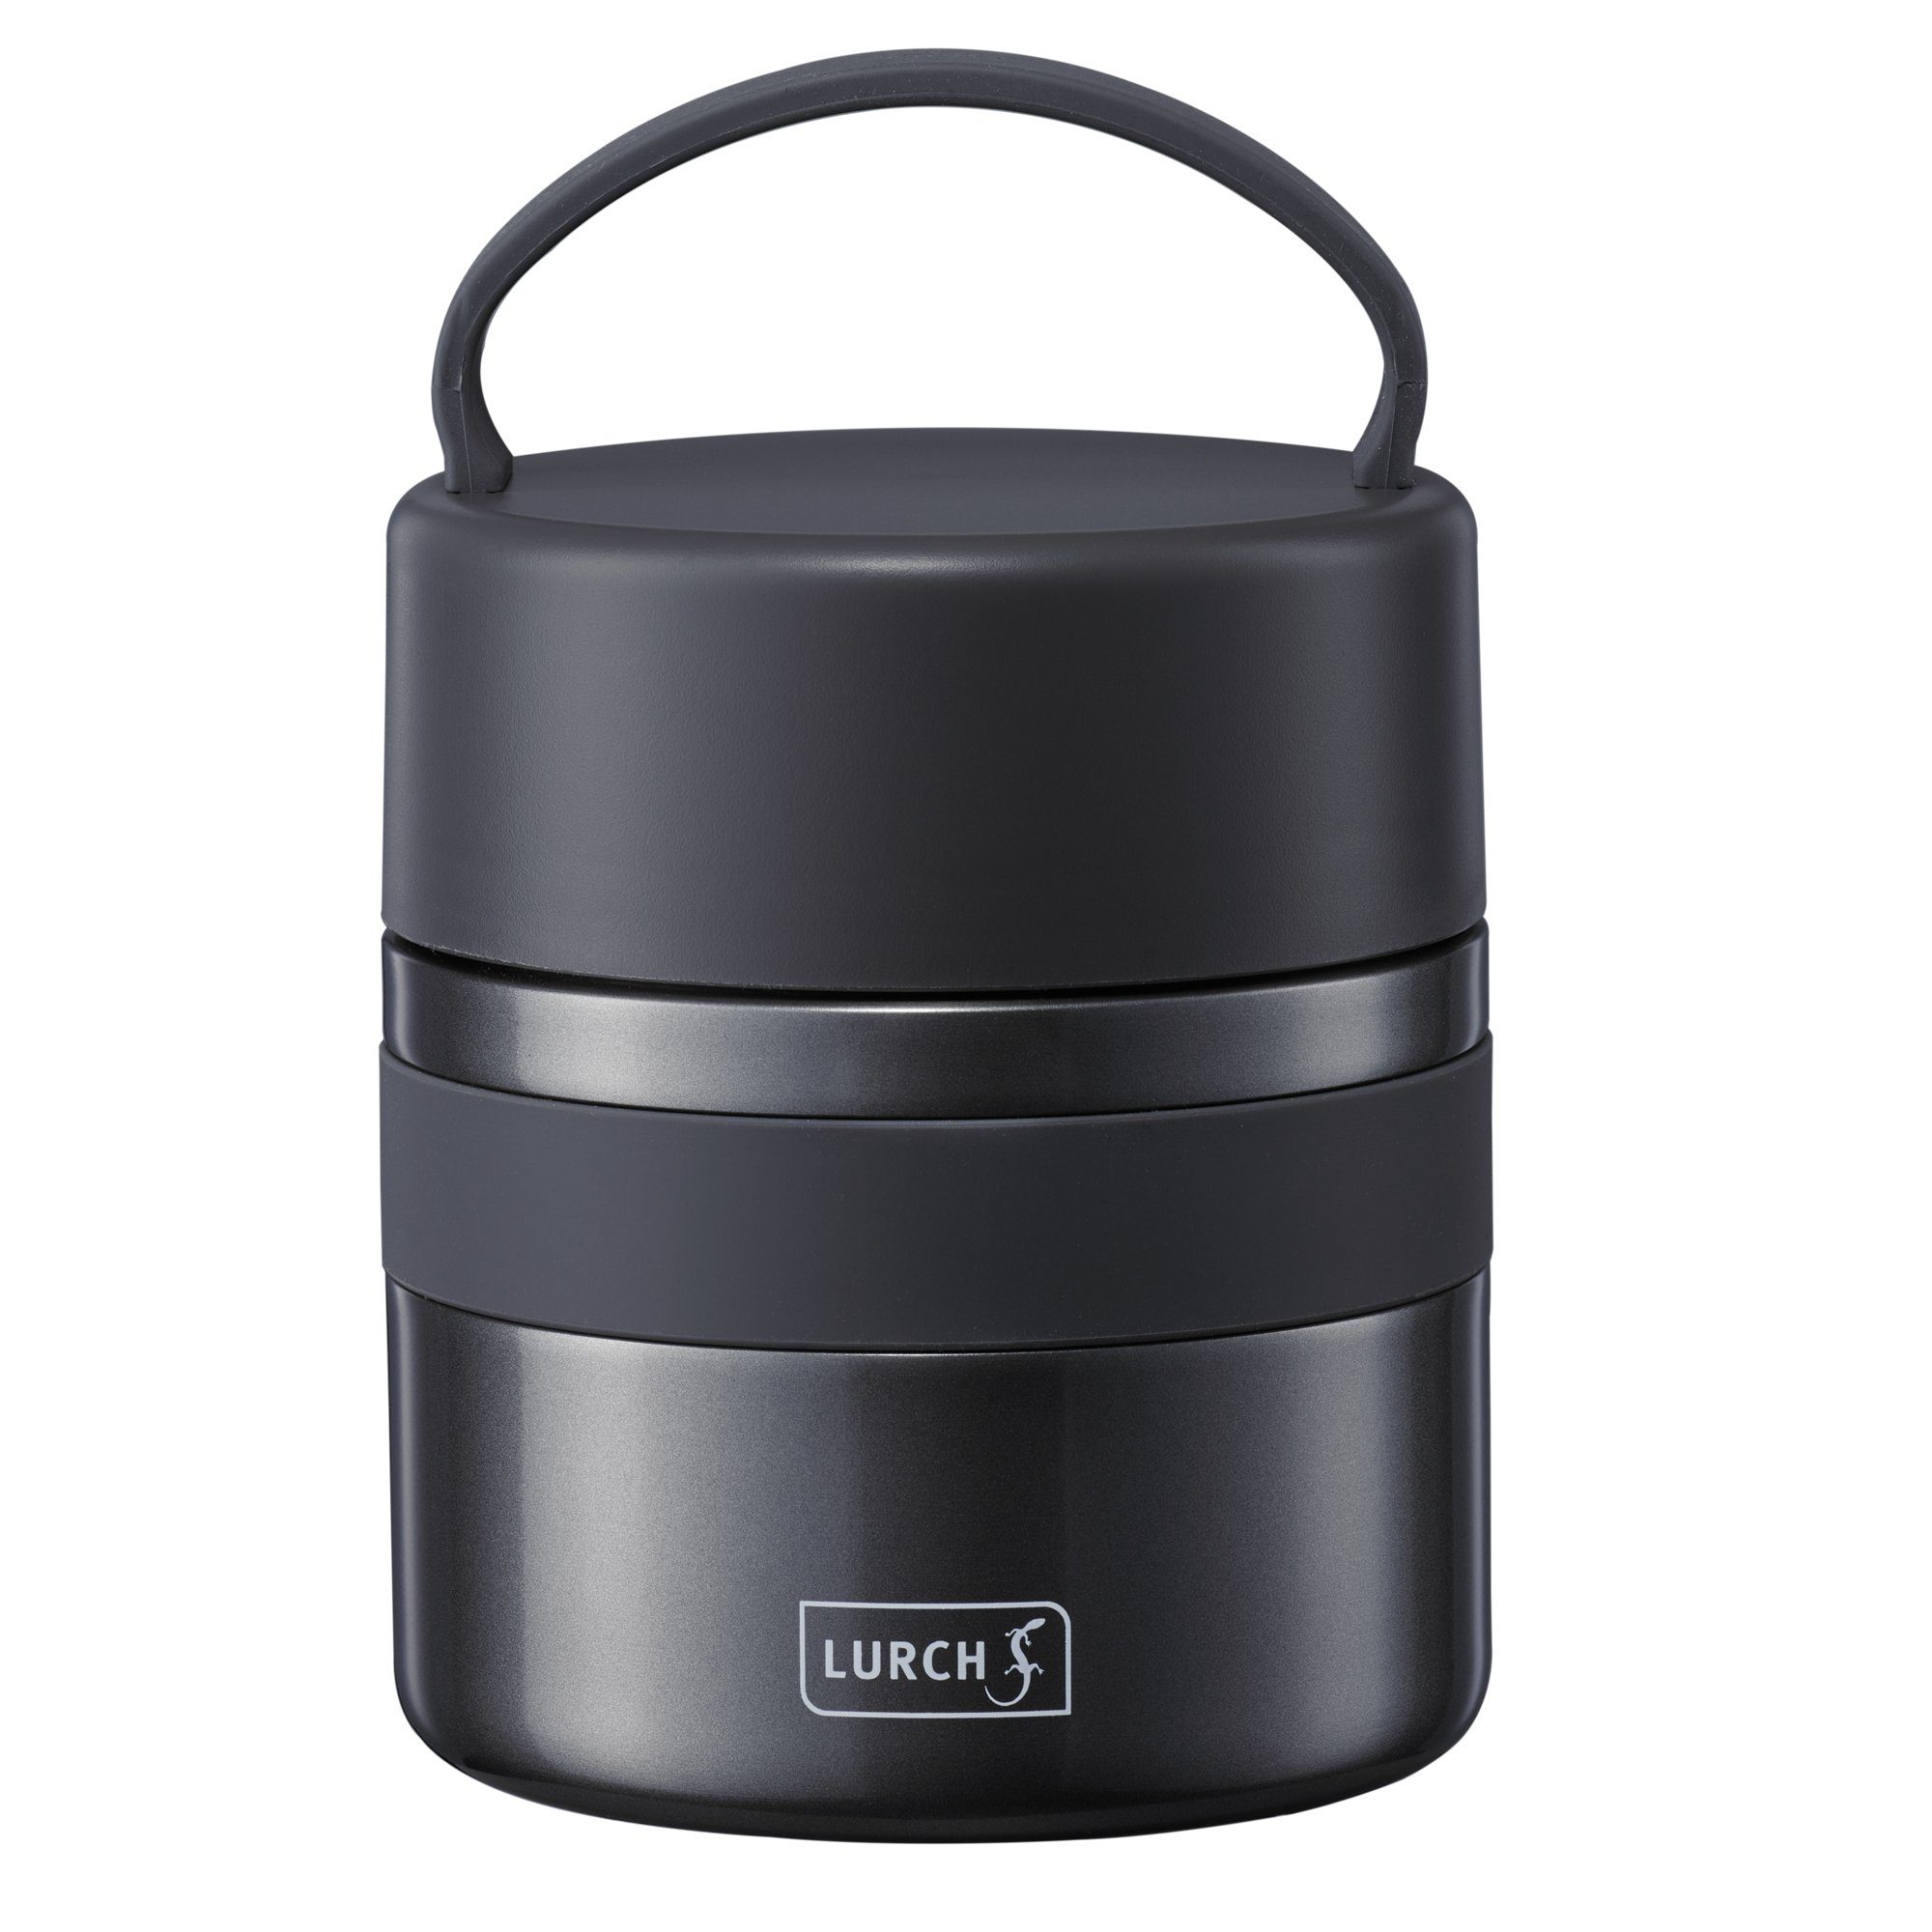 Lurch Thermobehälter Iso-Pot 500 ml für heiße und kalte Speisen, Edelstahl Grau Metallic